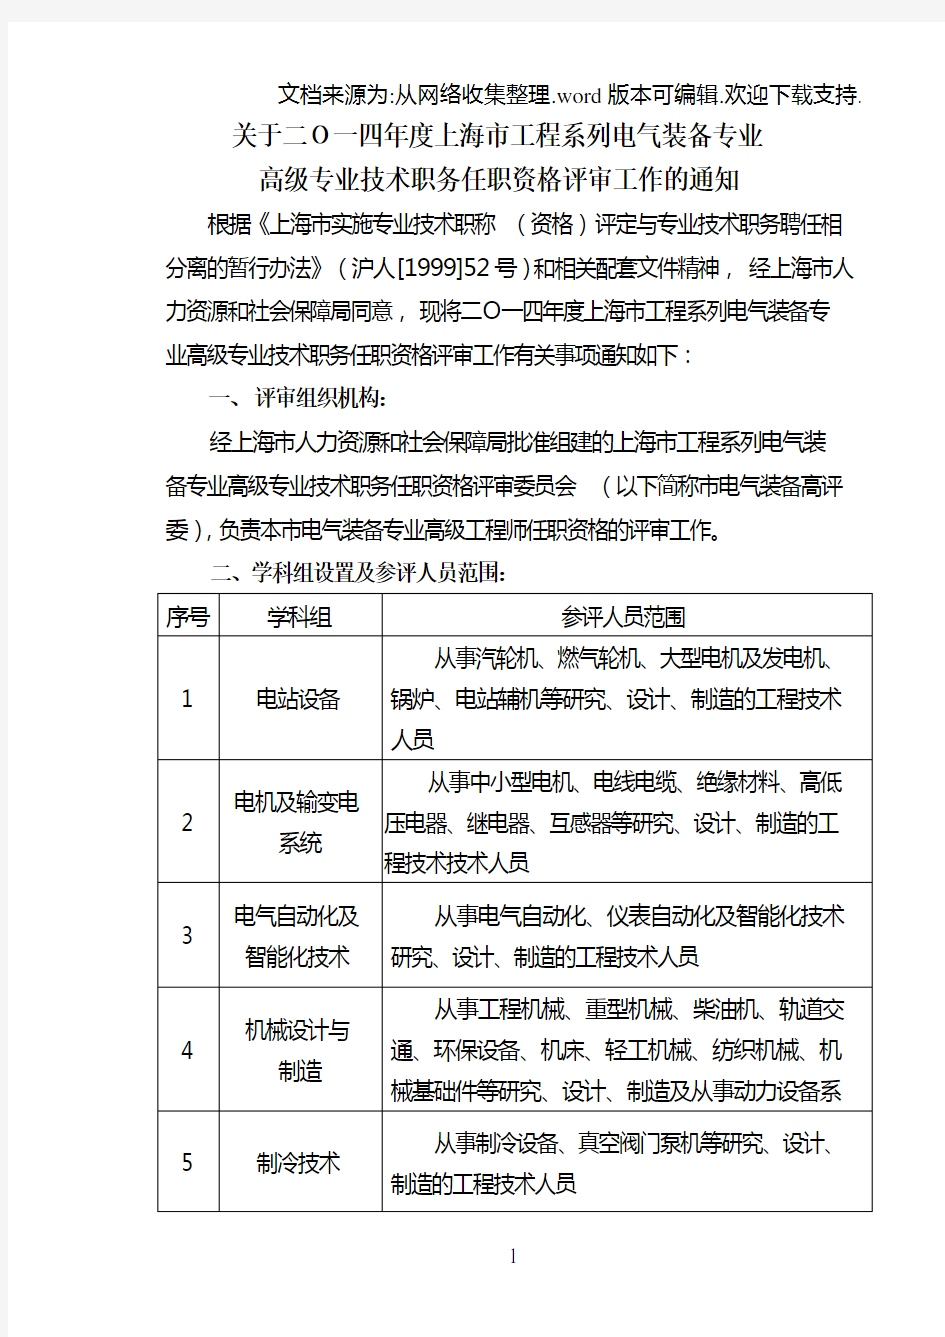 上海电气(集团)总公司发文稿纸